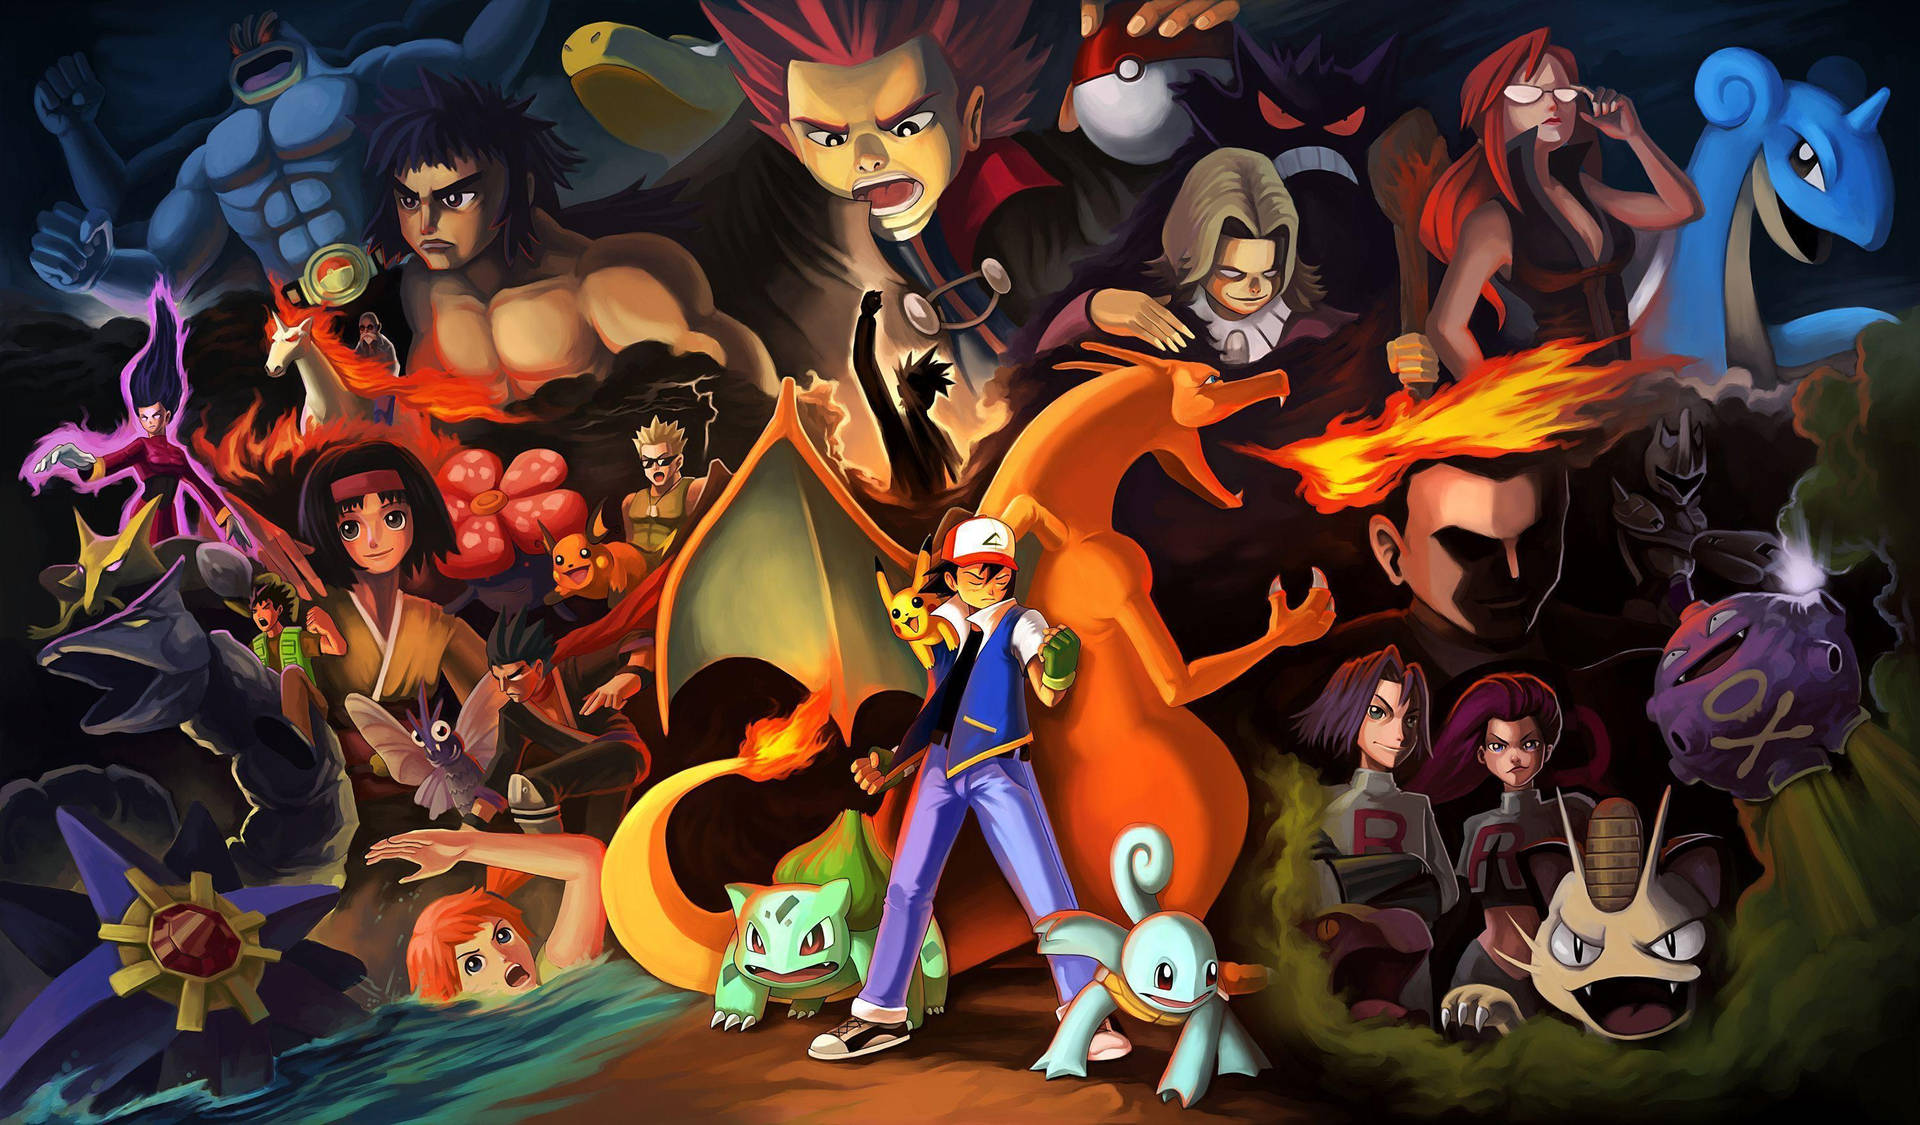 Machamp - The Superpower Pokémon in Action Wallpaper